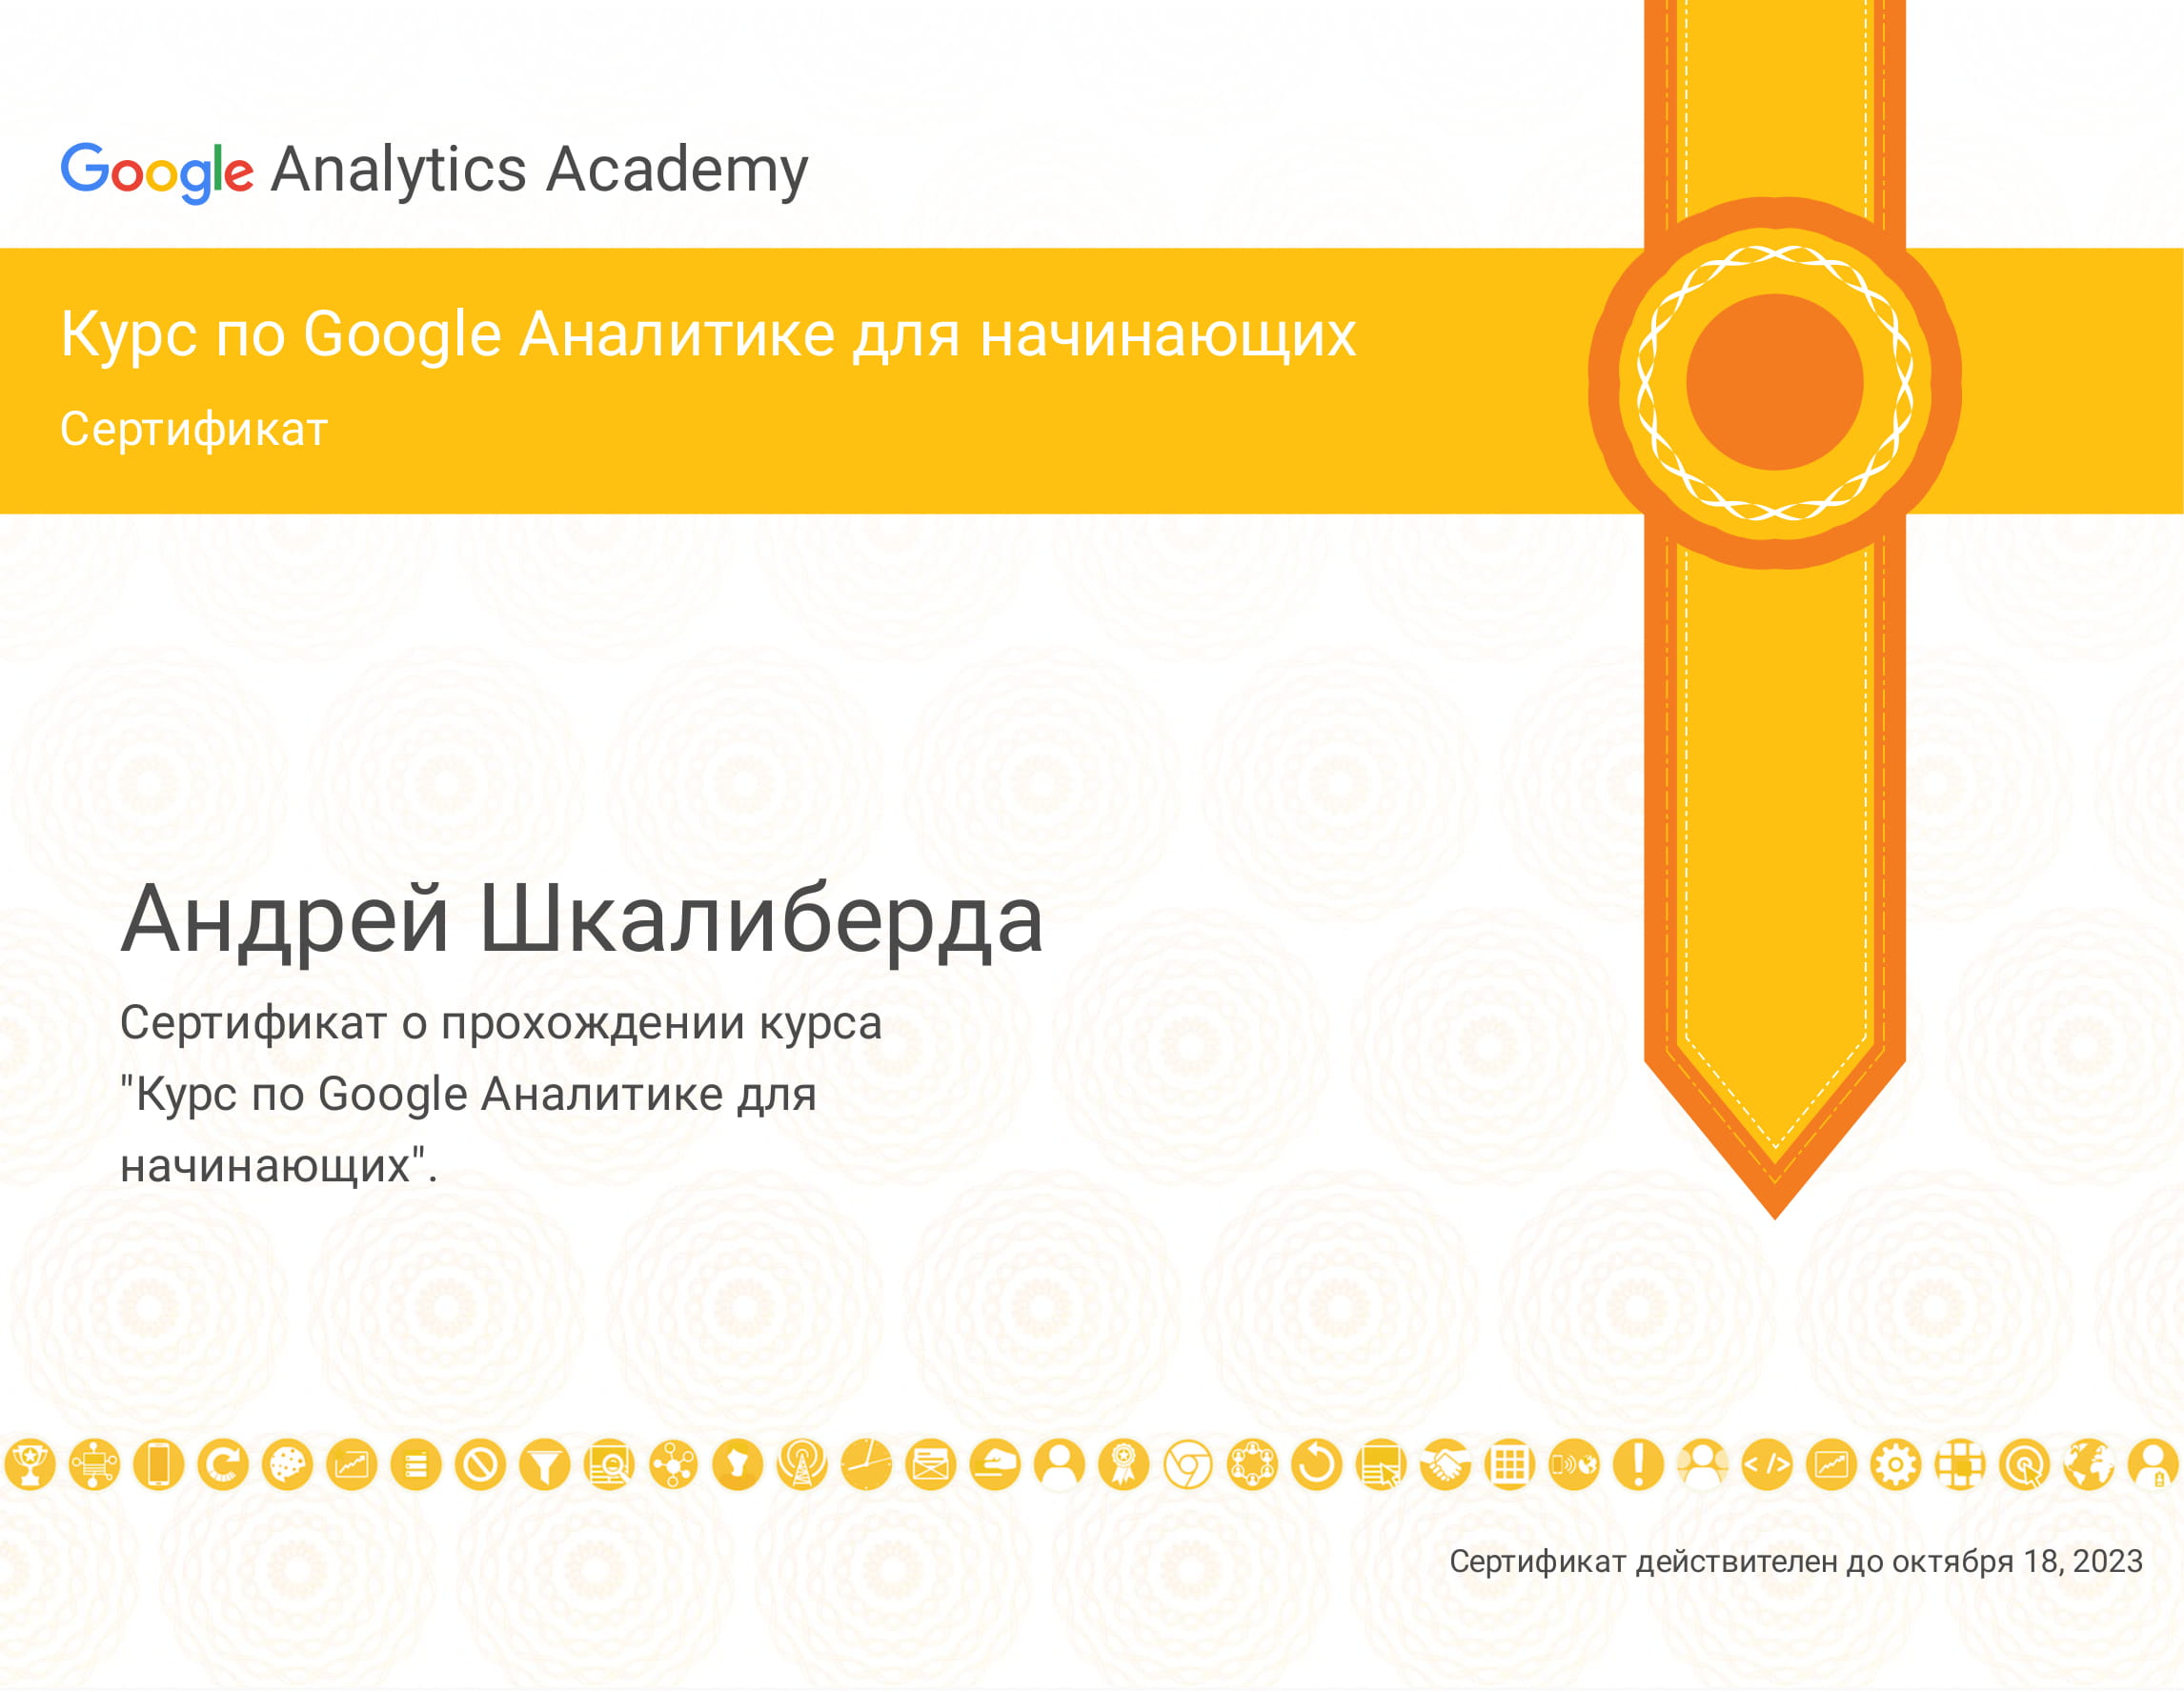 Андрей Шкалиберда - сертификат